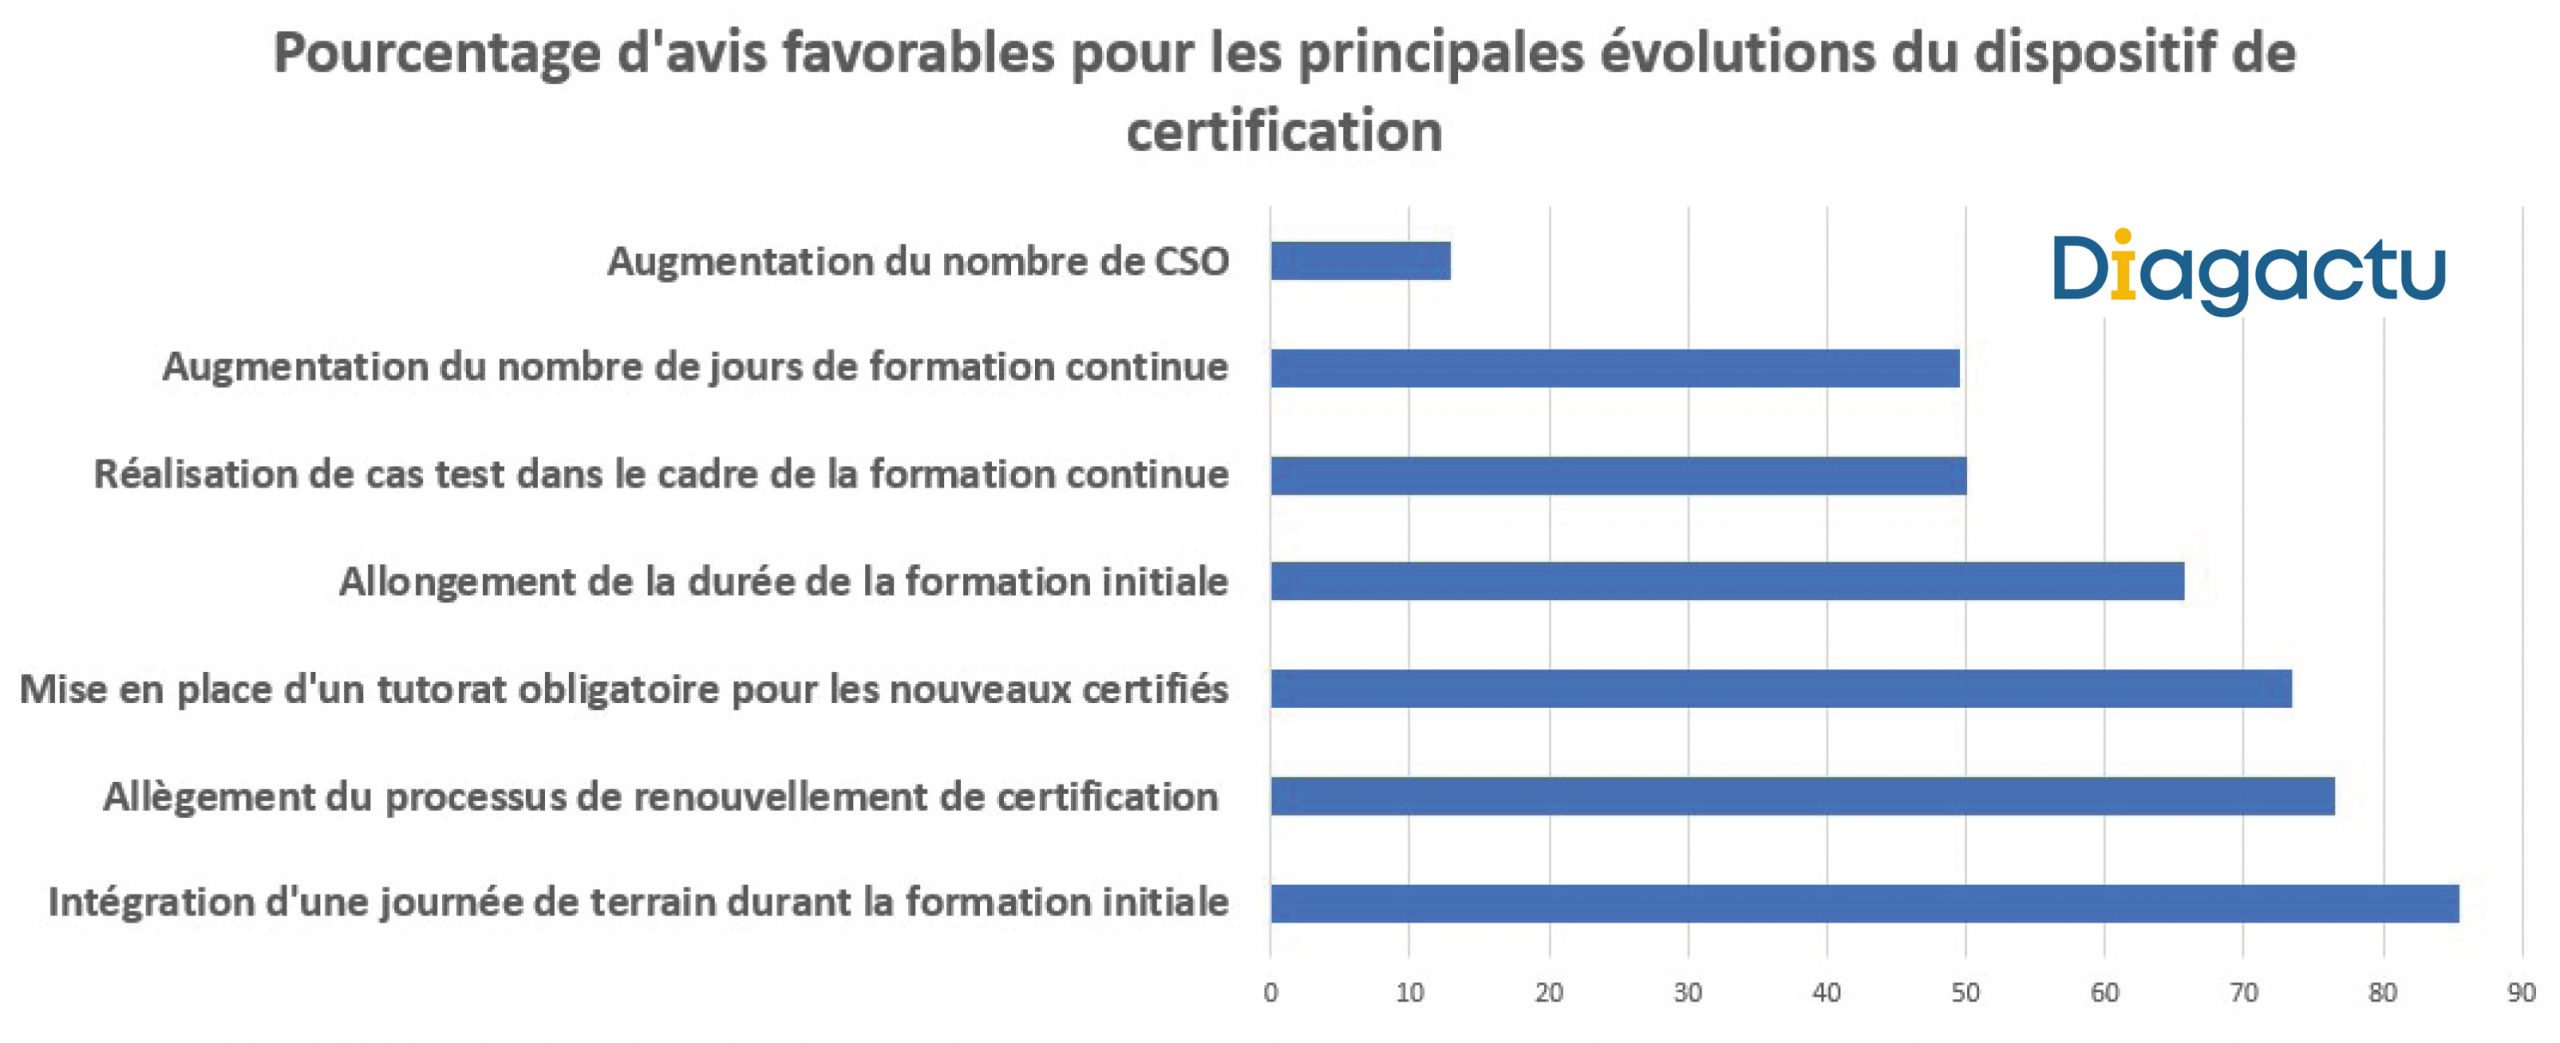 Graphique : Pourcentage d'avis favorables pour les principales évolutions du dispositif de certification